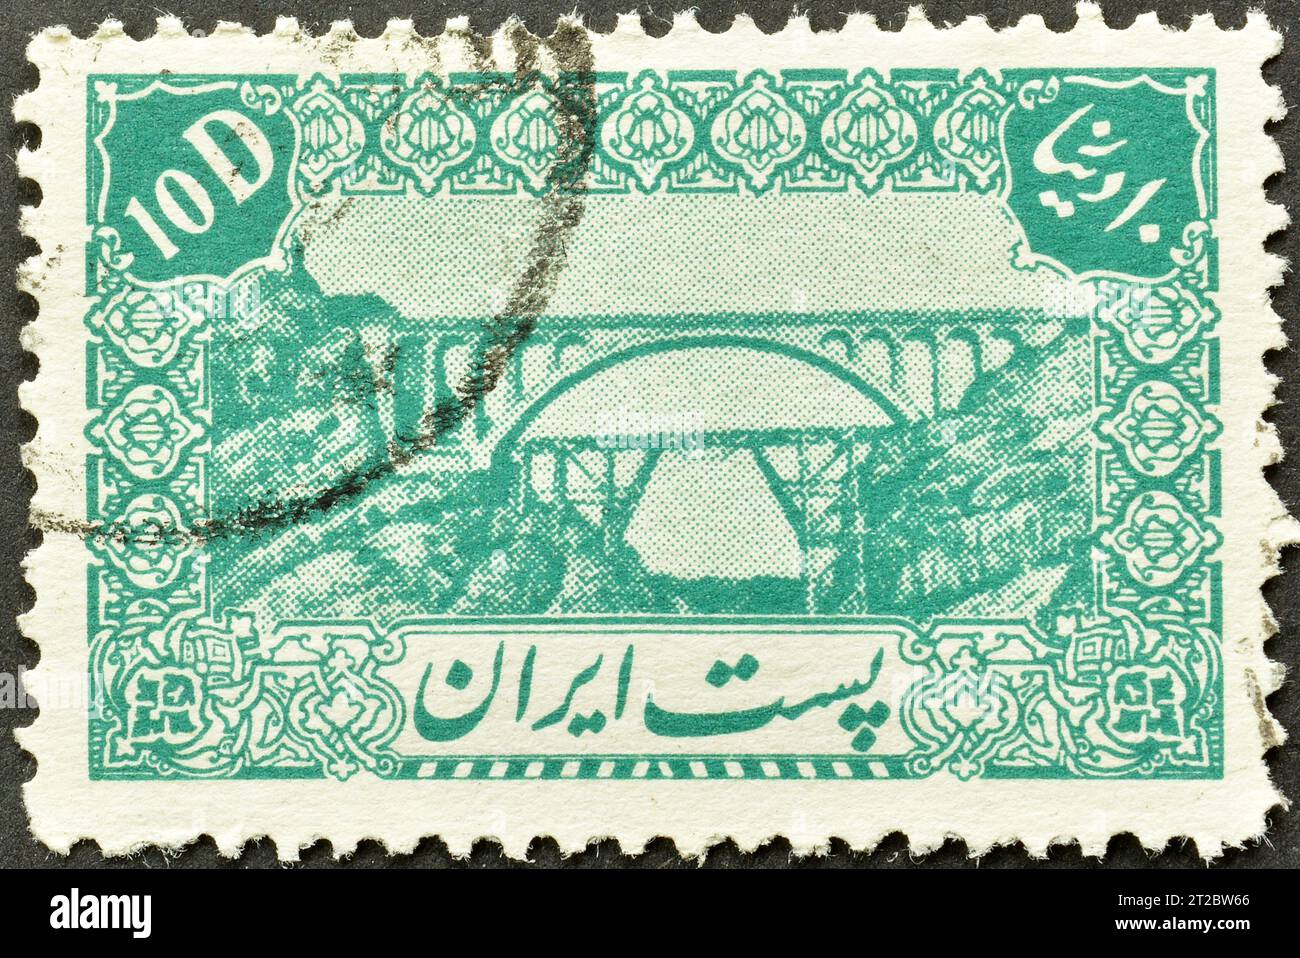 Timbre postal annulé imprimé par l'Iran, qui montre le pont Veresk, vers 1944. Banque D'Images